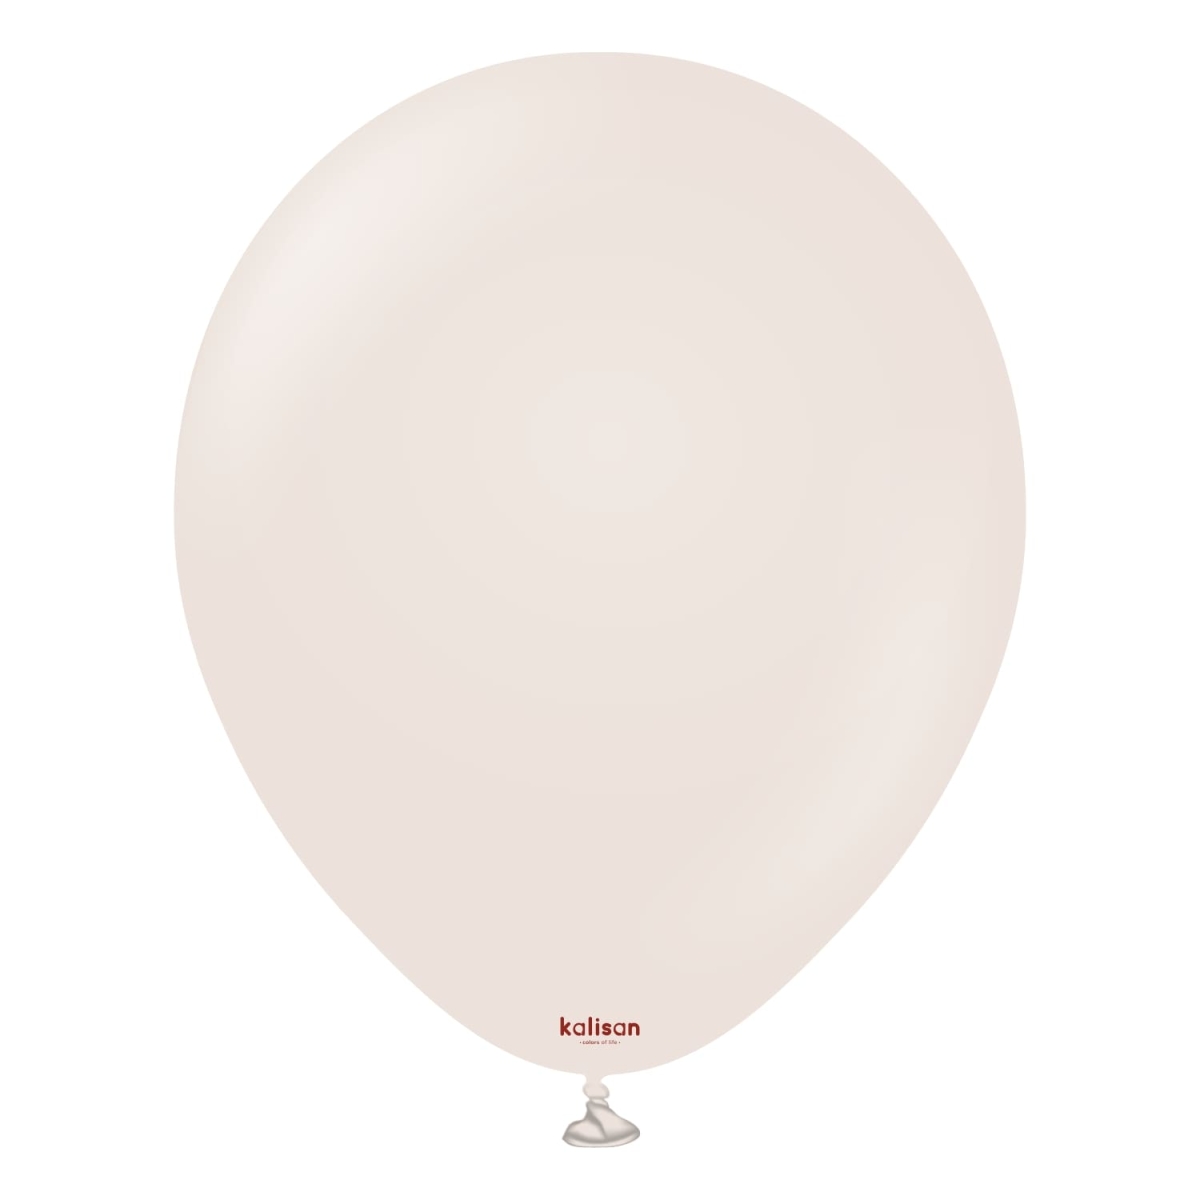 KALISAN (50) 11" Retro White Sand balloons